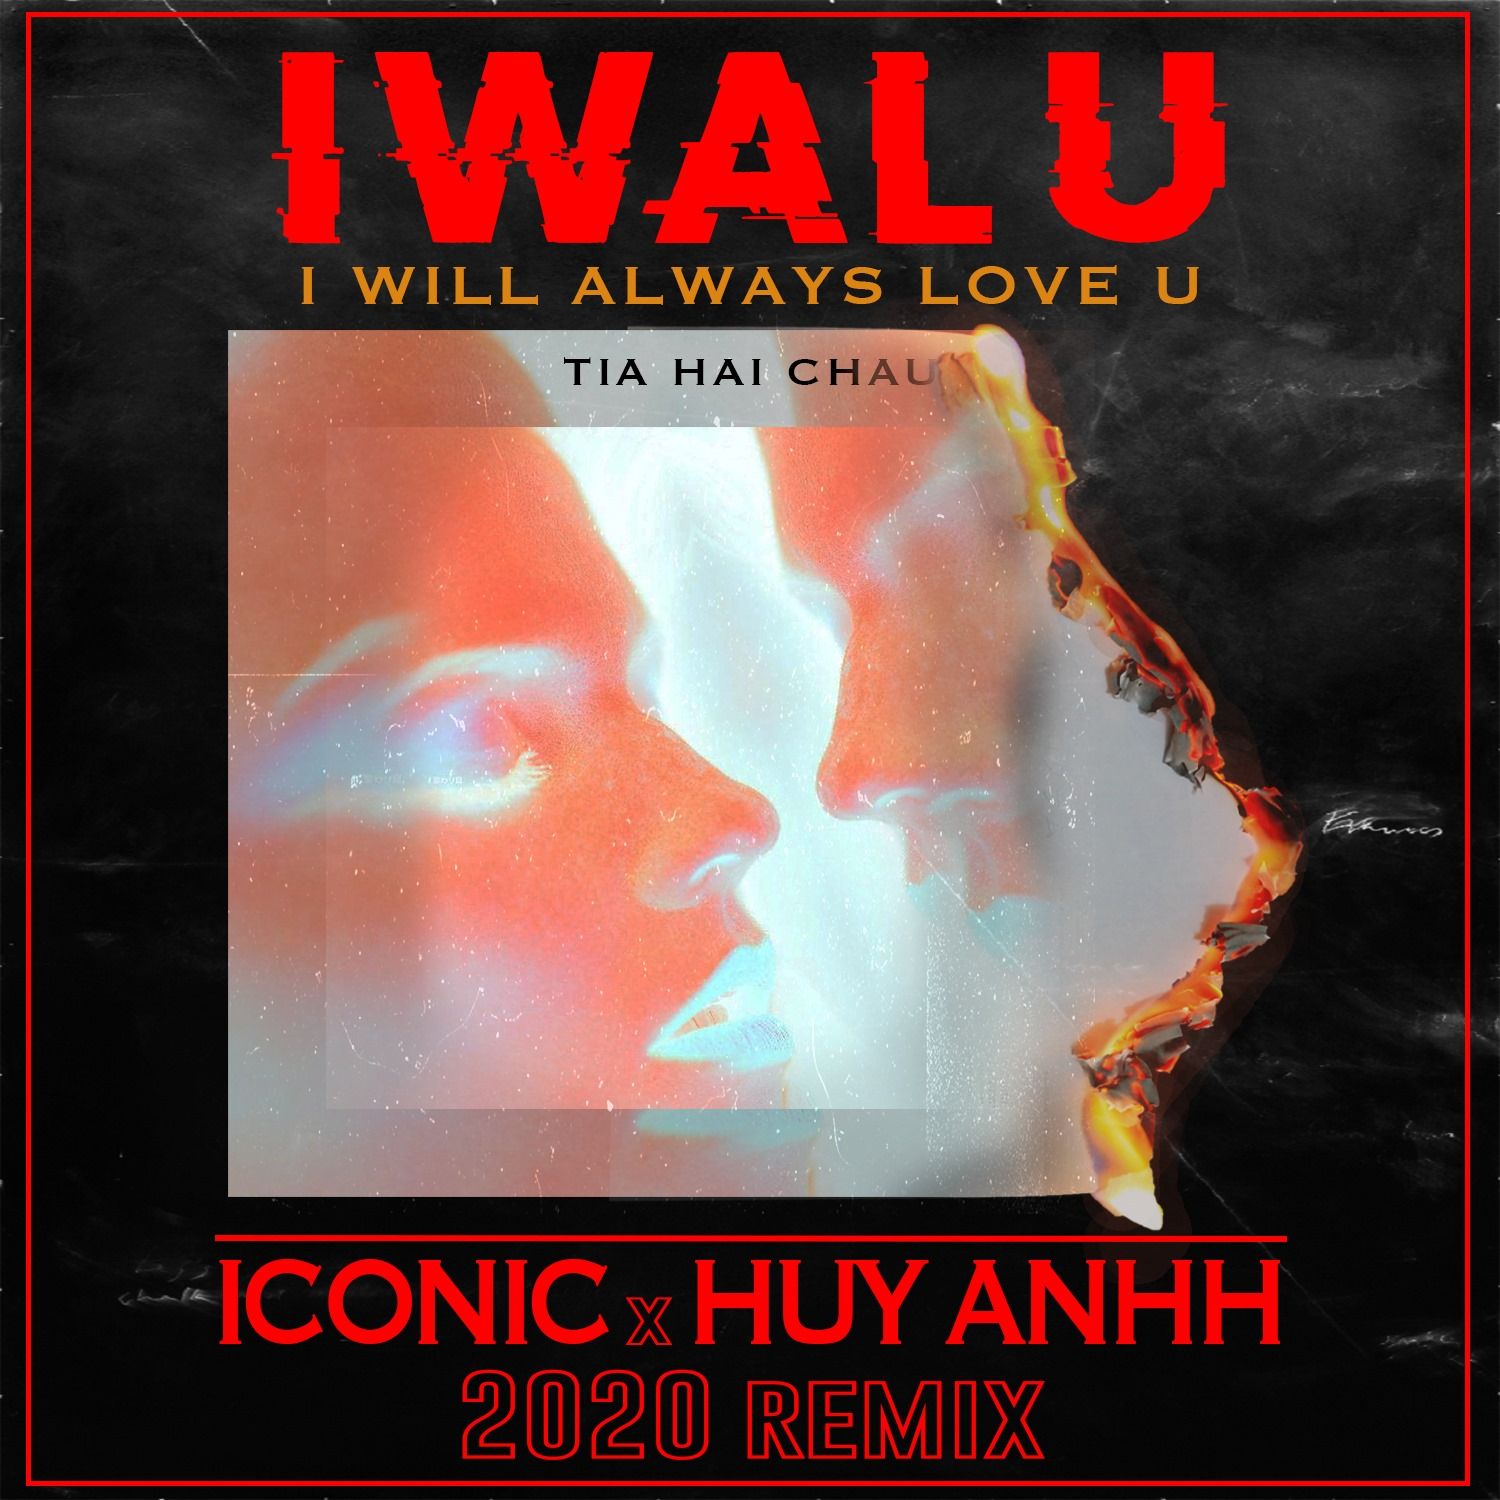 Pakua GIT X TIA - IWALU (ICONIC & HUYANHH 2020 REMIX)